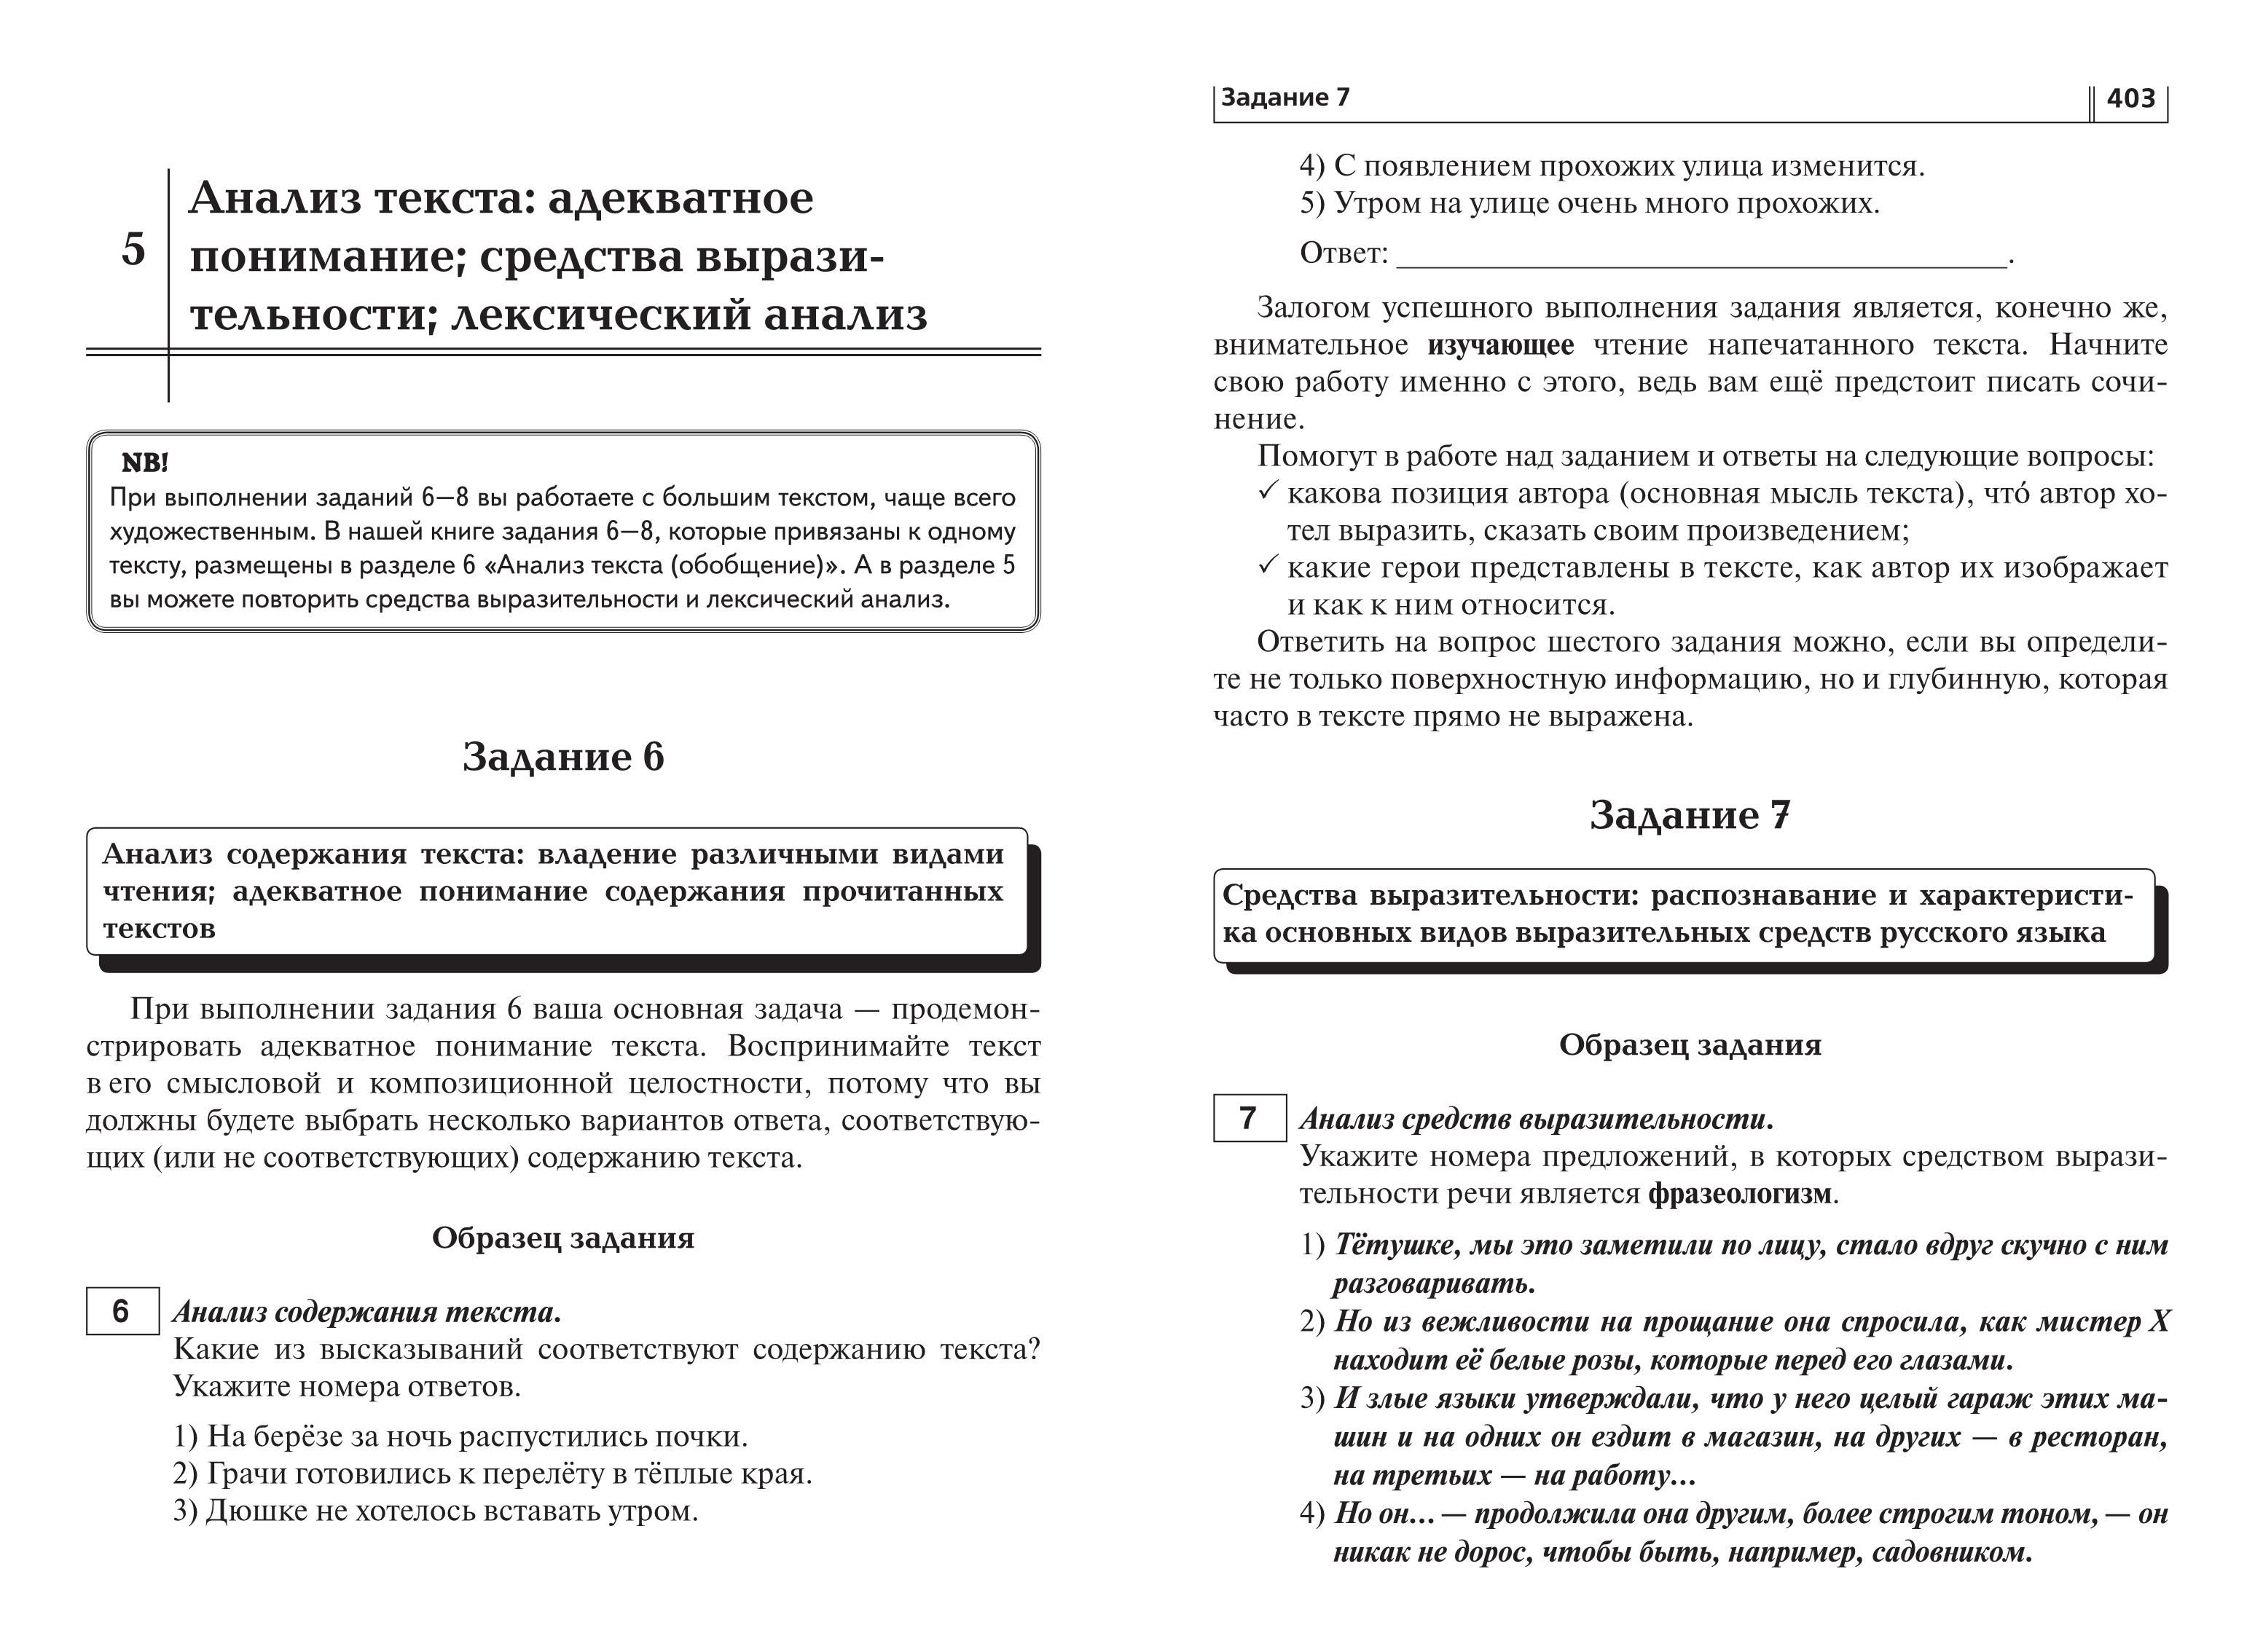 Русский язык. ОГЭ-2021. 9 класс. Тематический тренинг